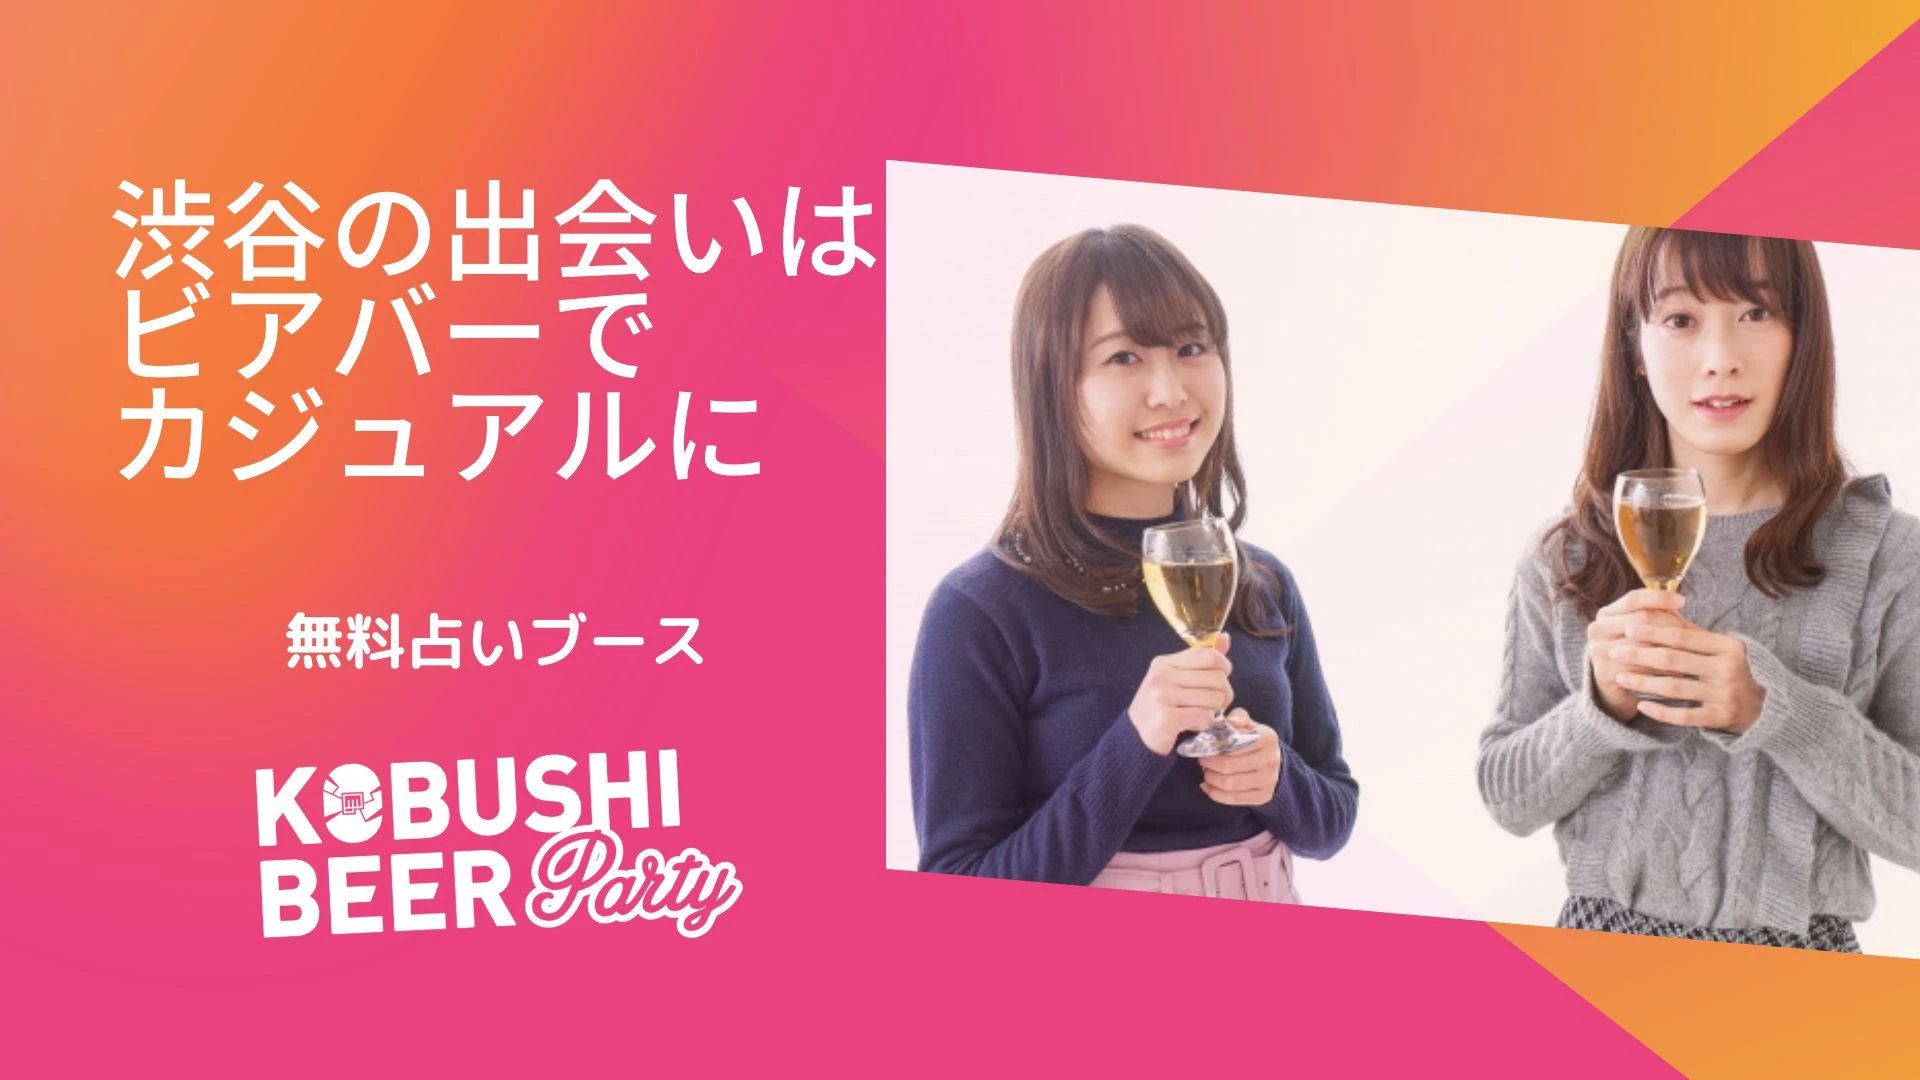 【東京の街コン】KOBUSHI BEER LOUNGE & BAR主催 2022年9月3日